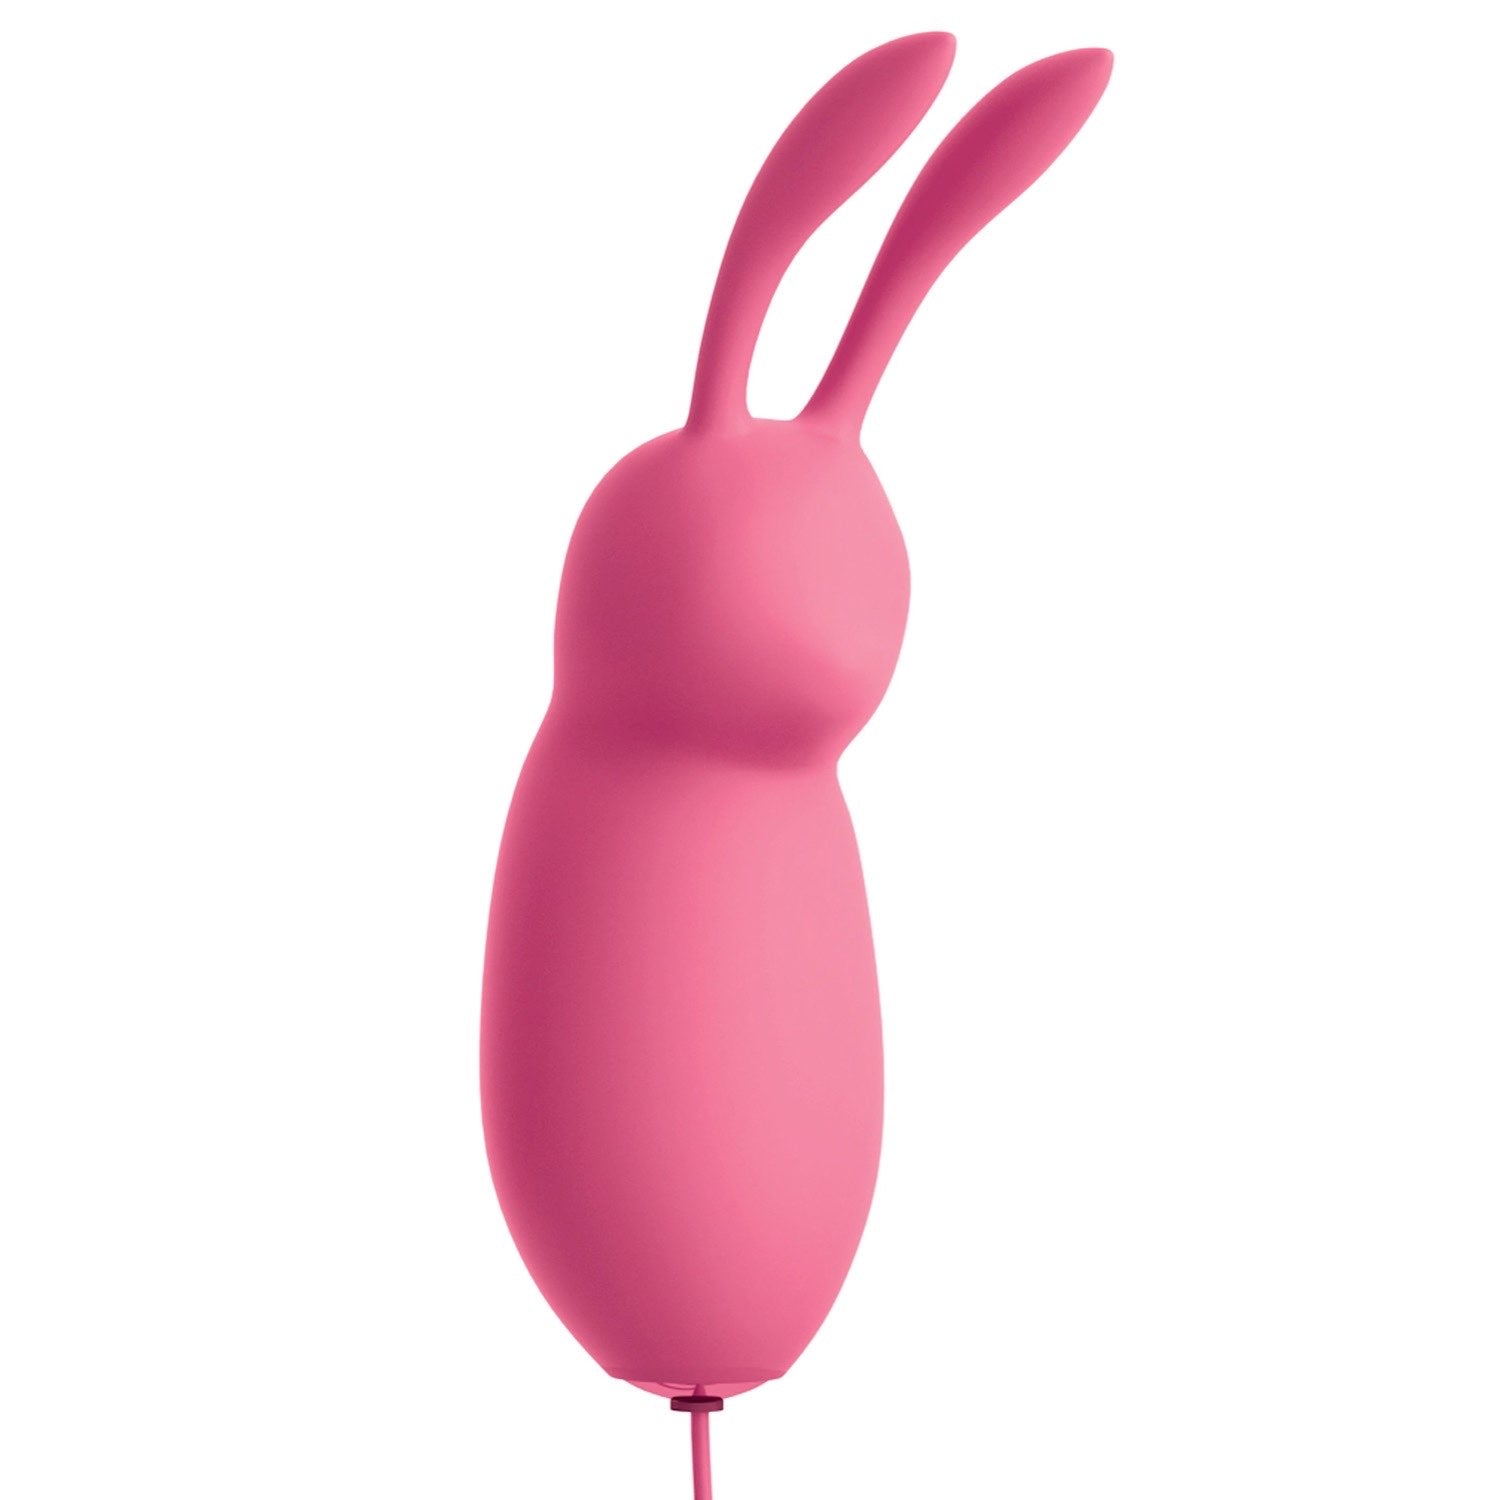 我的天啊！ 我的天啊！ Bullets #Cute - 粉色 USB 供电兔子子弹头 by Pipedream